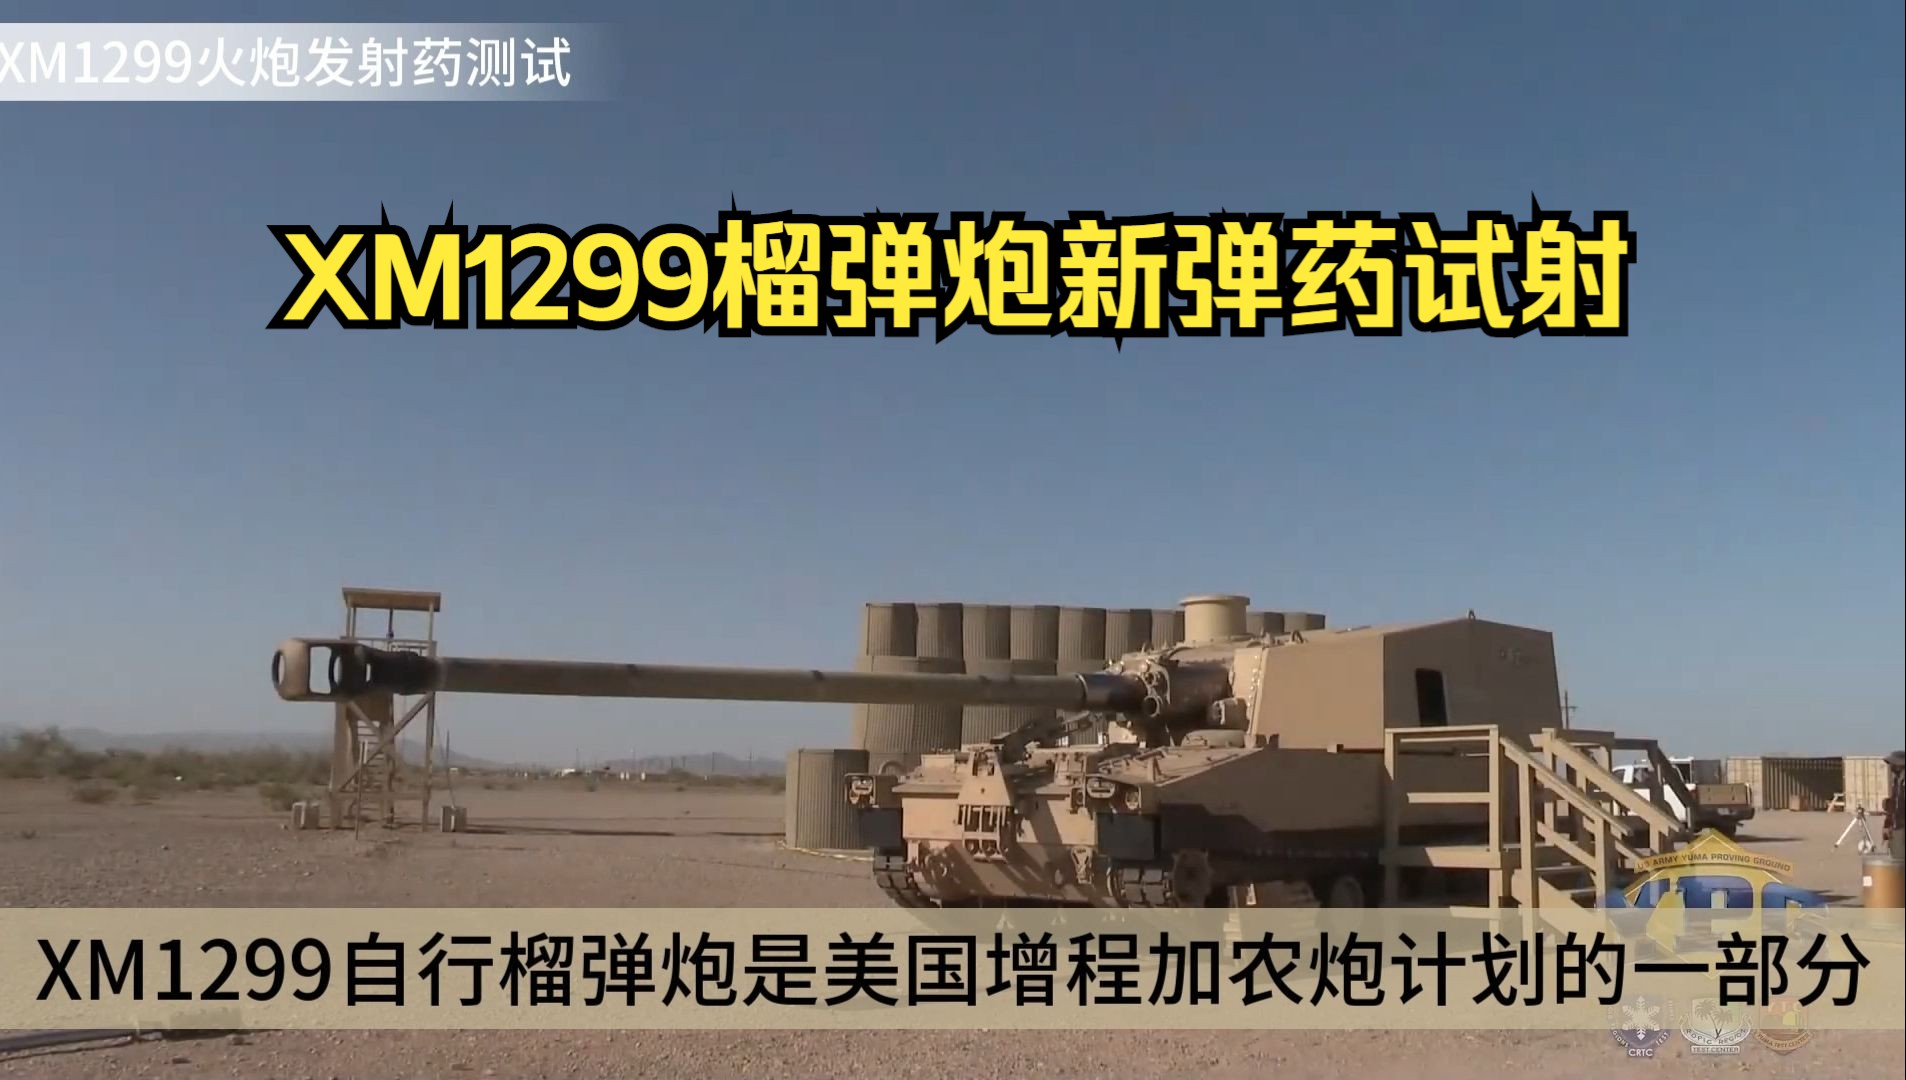 【武器原声】XM1299火炮用新型弹药试射